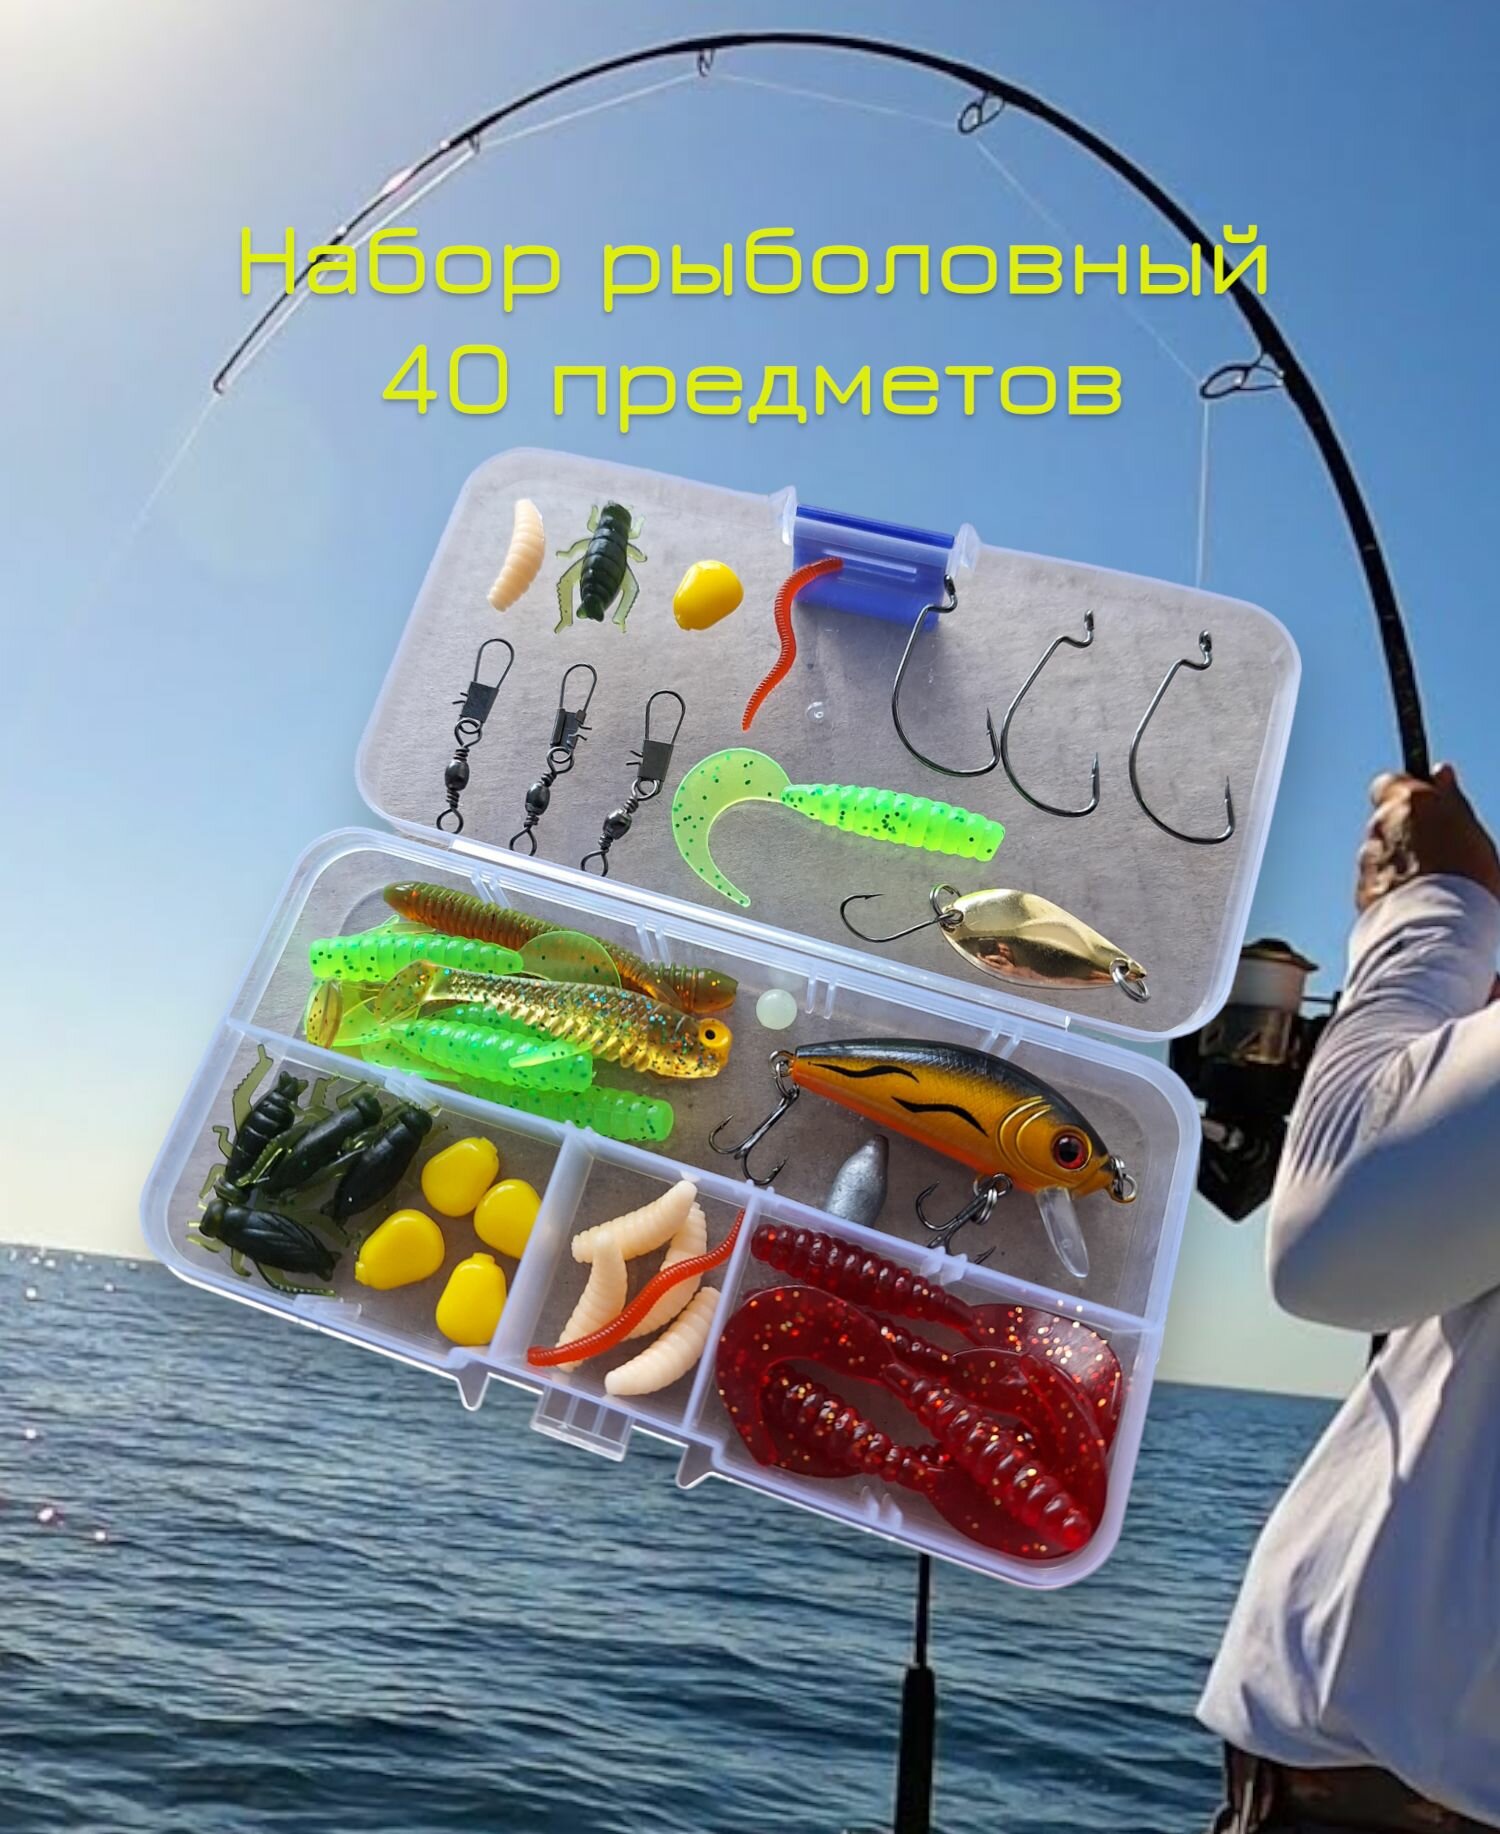 Набор для рыбалки 40 предметов : воблер, блесна, силиконовые приманки, рыболовные снасти и крючки